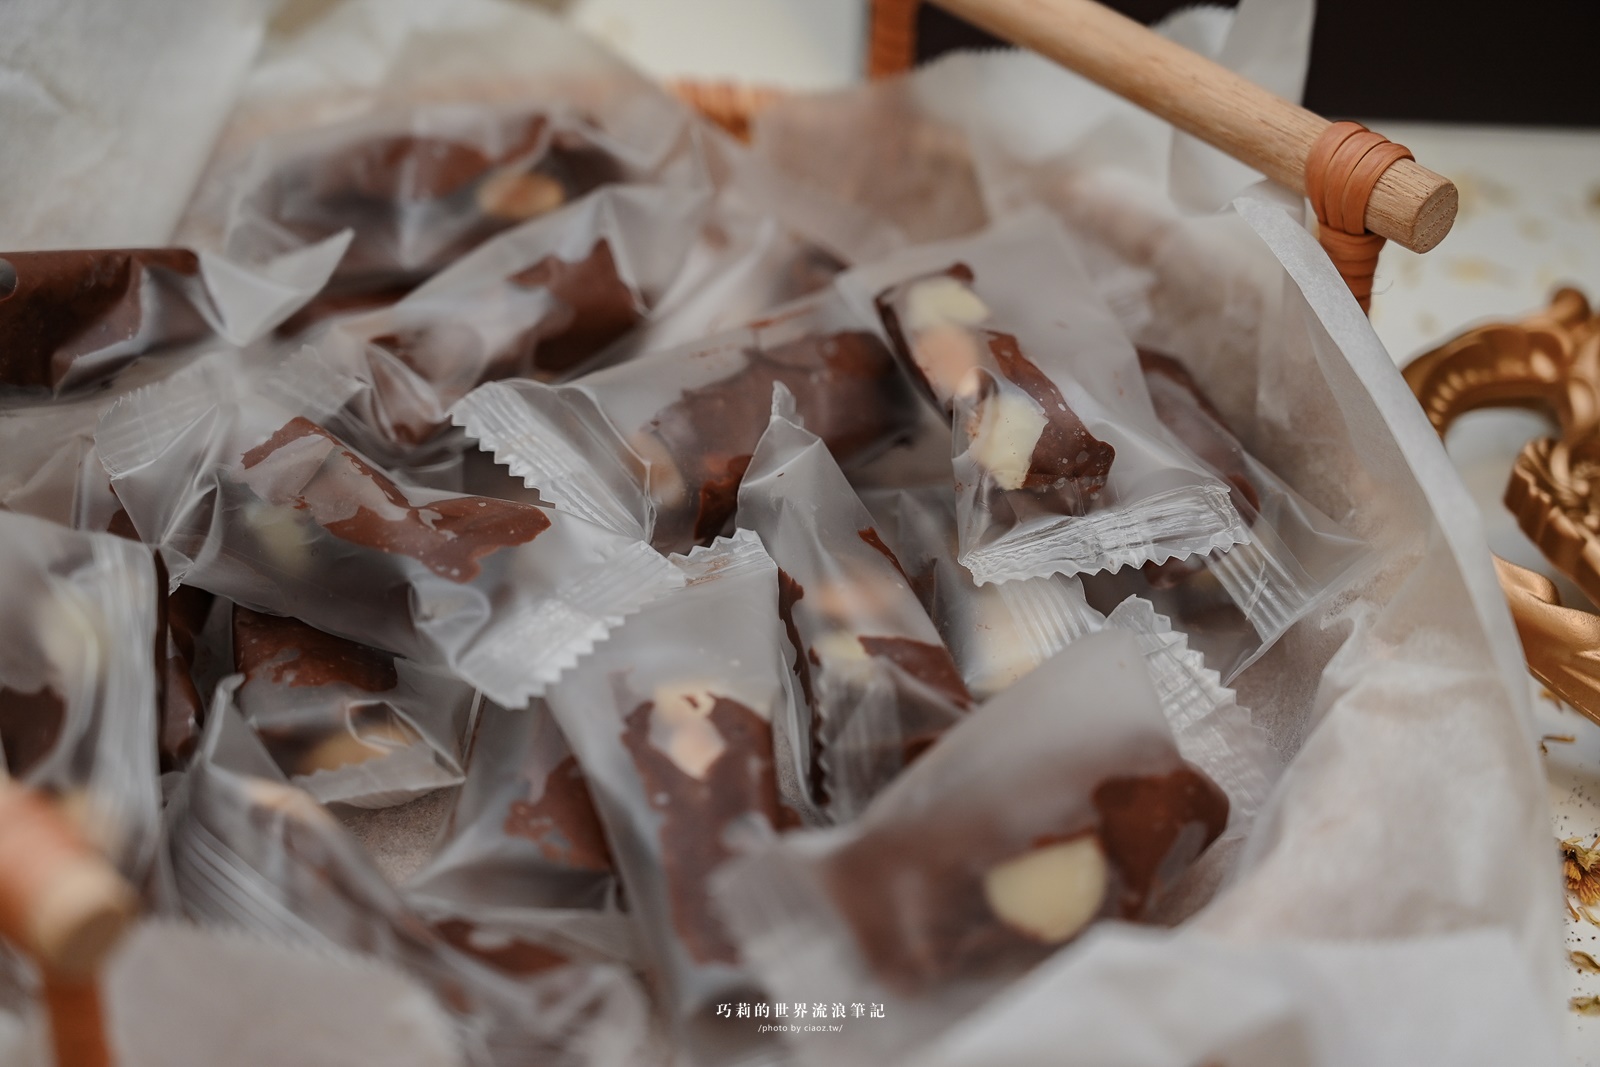 可可德歐巧克力｜宜蘭名產推薦 Cacao D&#8217;or 礁溪伴手禮最後一站！把蘭陽平原的黑鑽石帶回家 @巧莉的世界流浪筆記